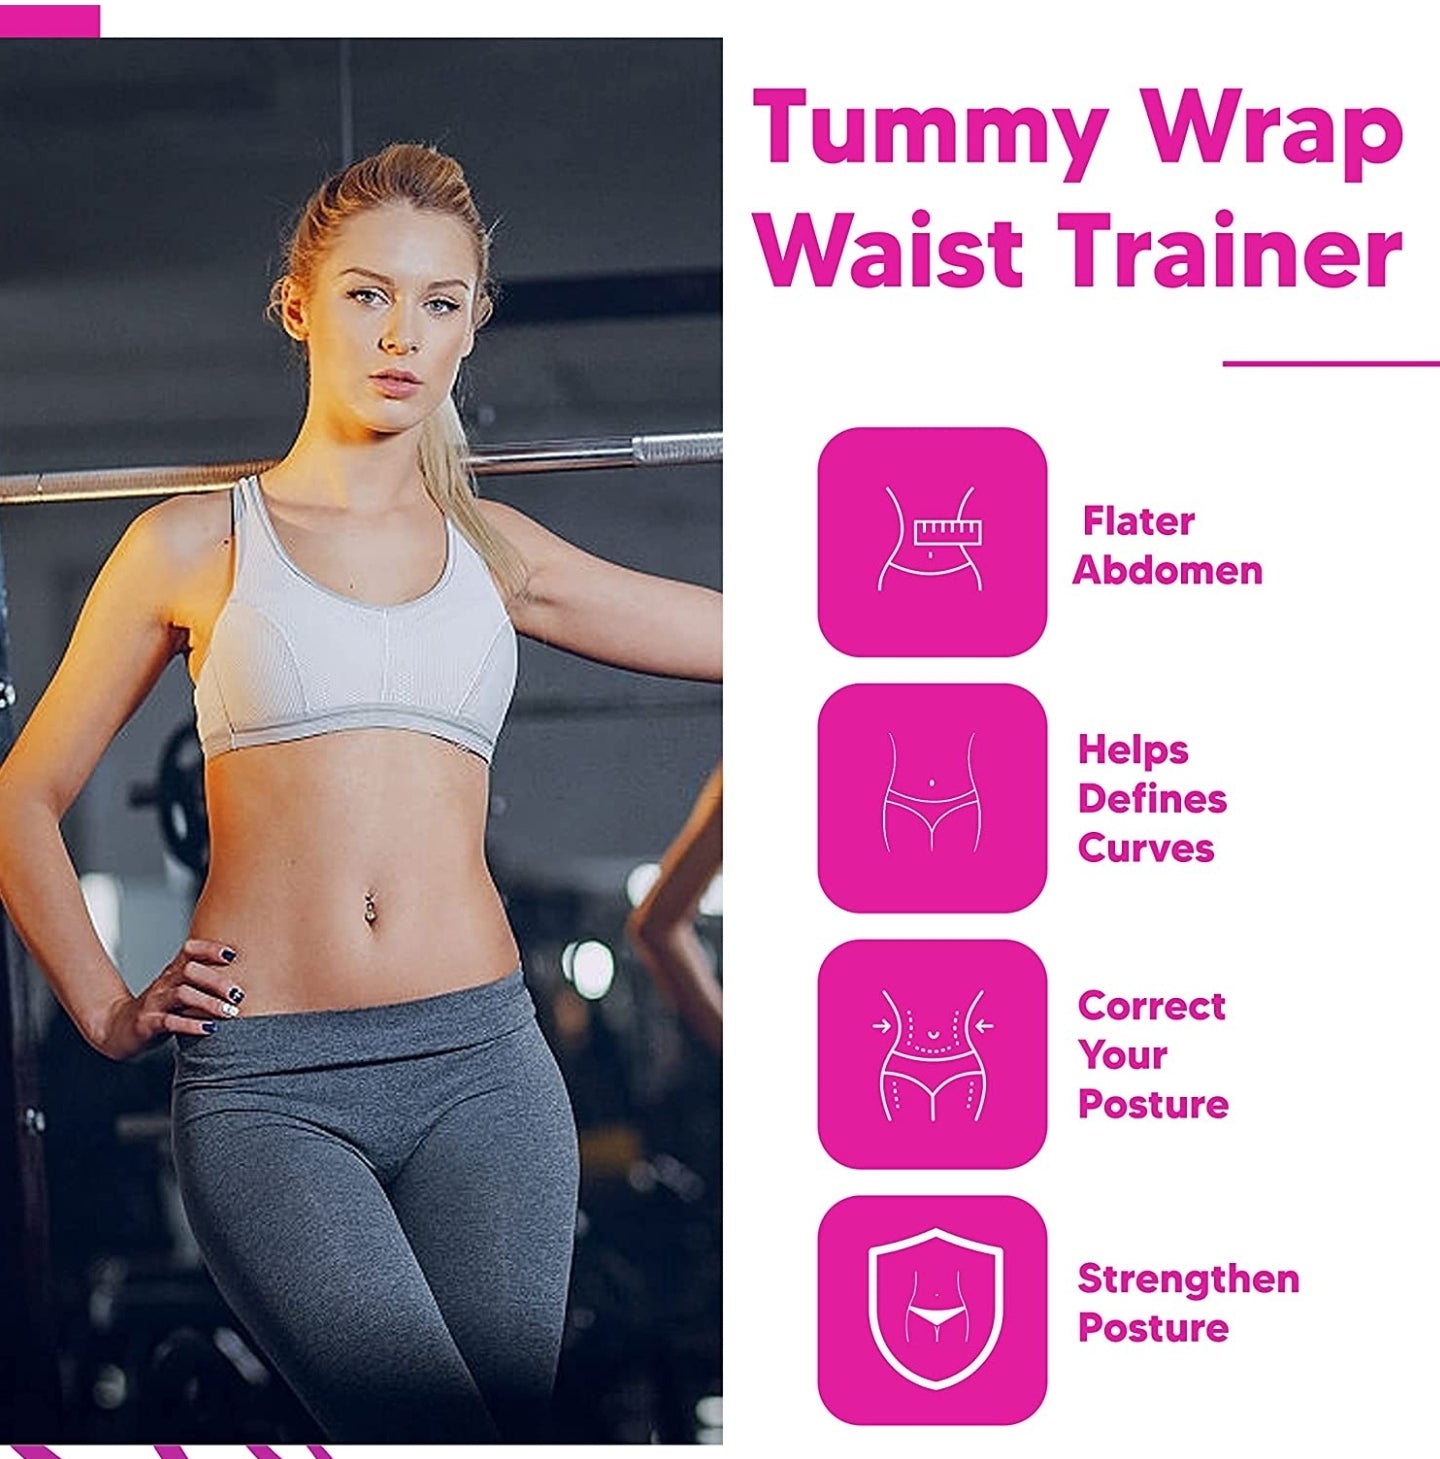 Bodybychoco New Lipo Wrap Waist Trainer